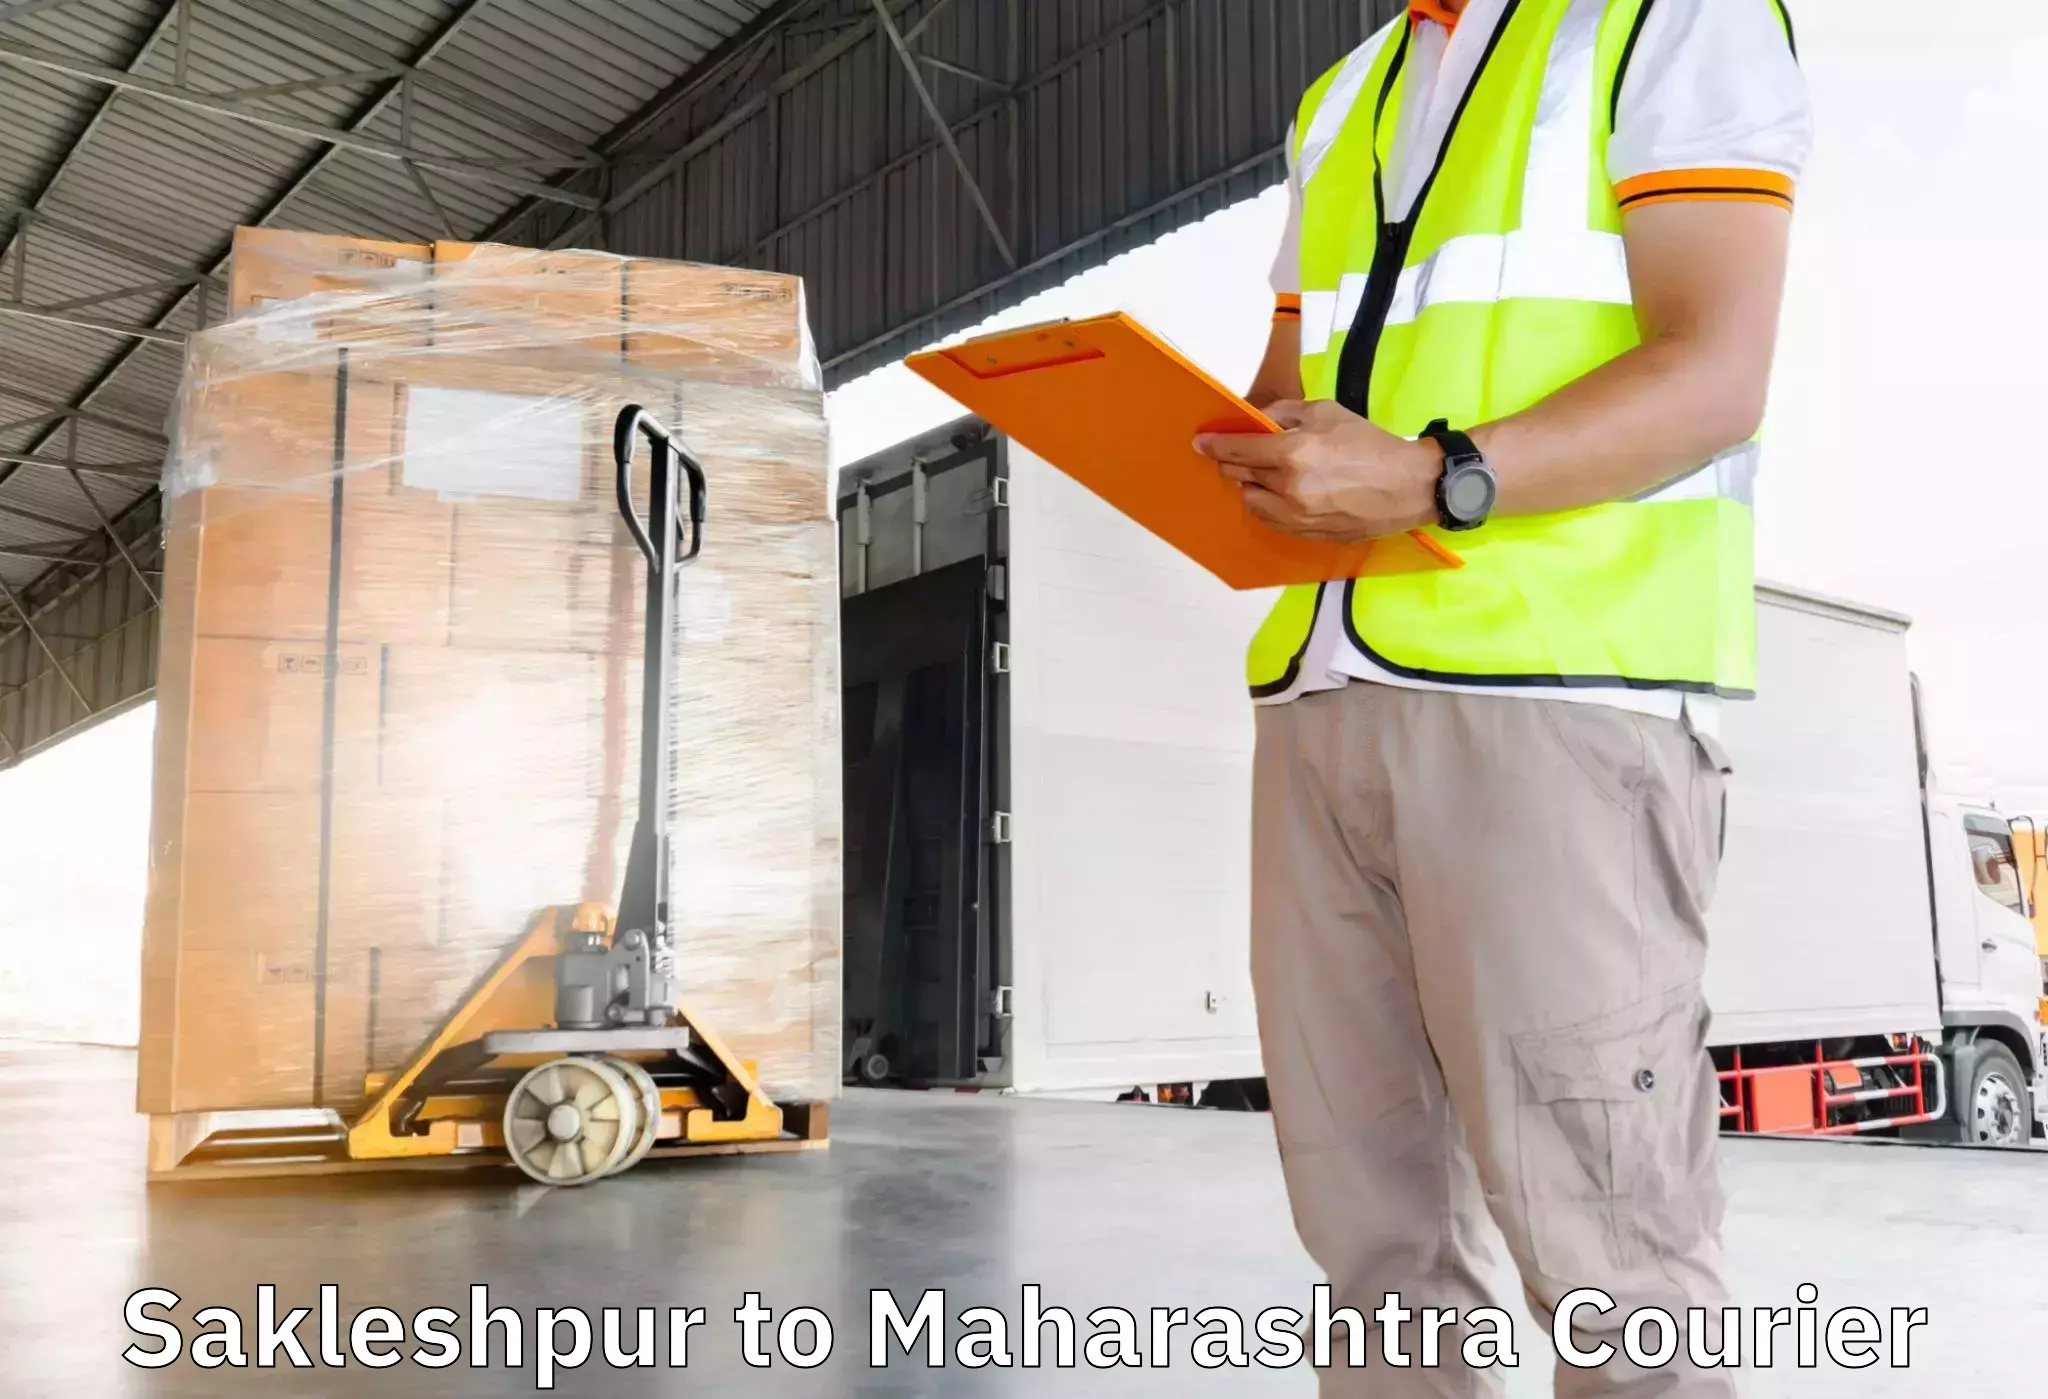 Skilled furniture movers Sakleshpur to Pusad